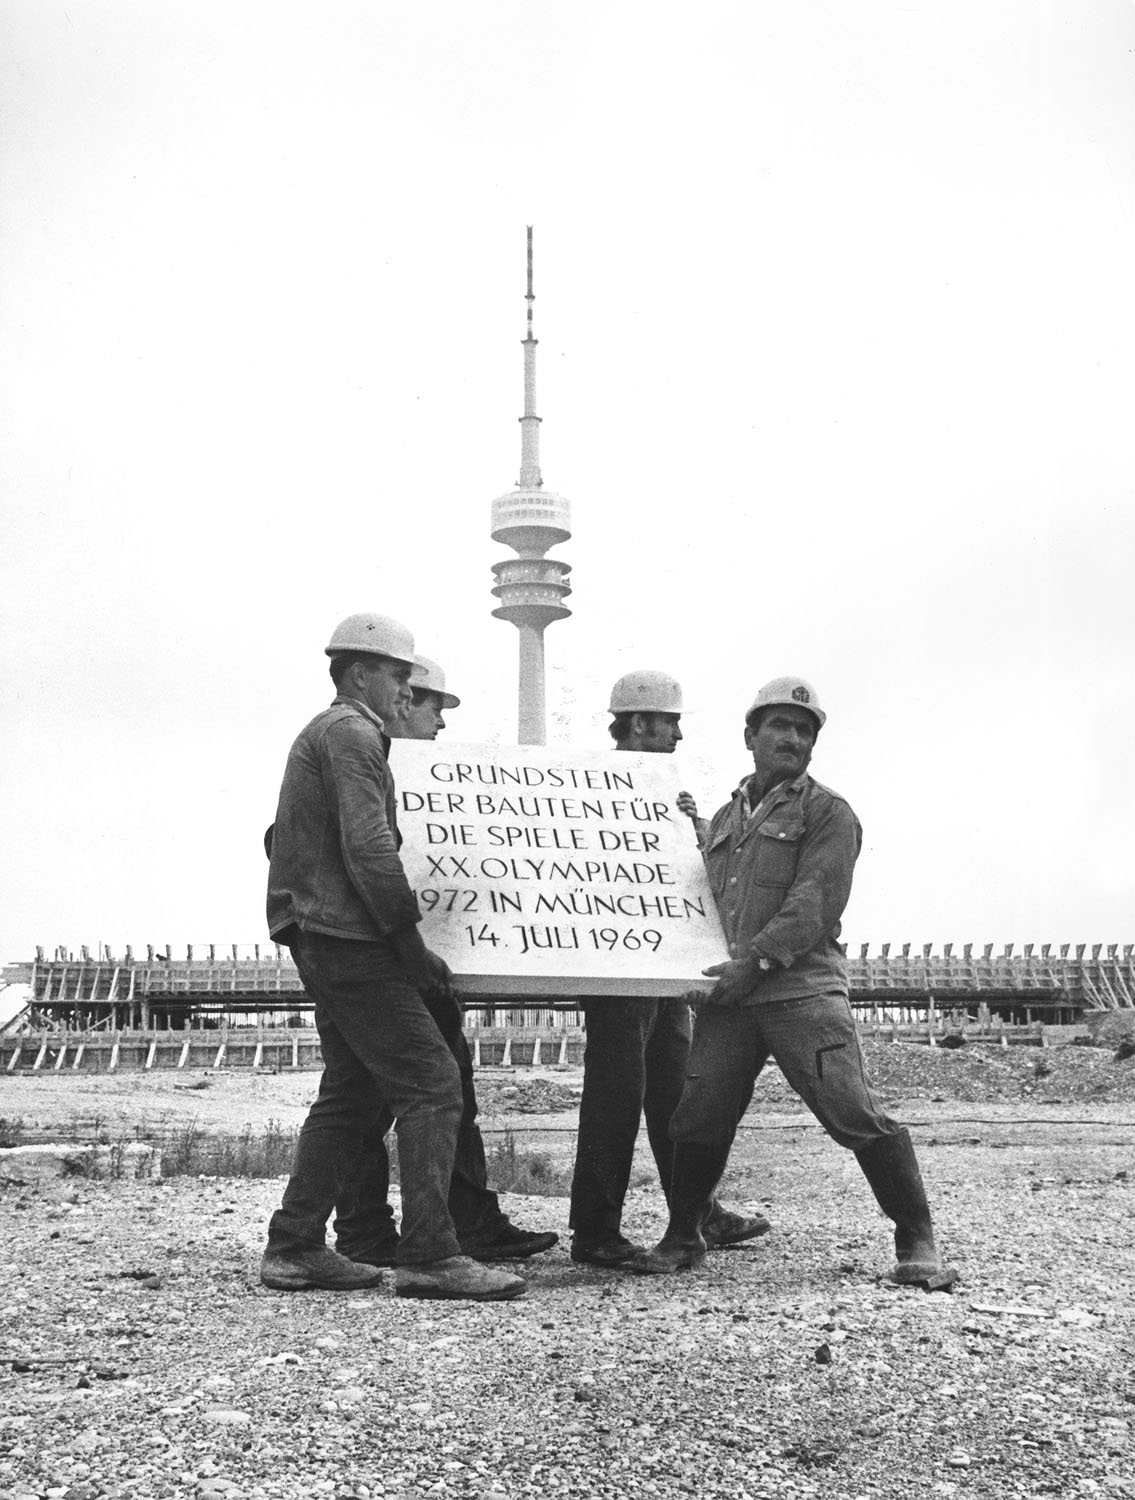 Schwarz-Weiß-Fotografie einer Bauarbeitergruppe die ein schweren Betonstein durch eine Baustelle tragen. Im Hintergrund steht ein Fernsehturm.